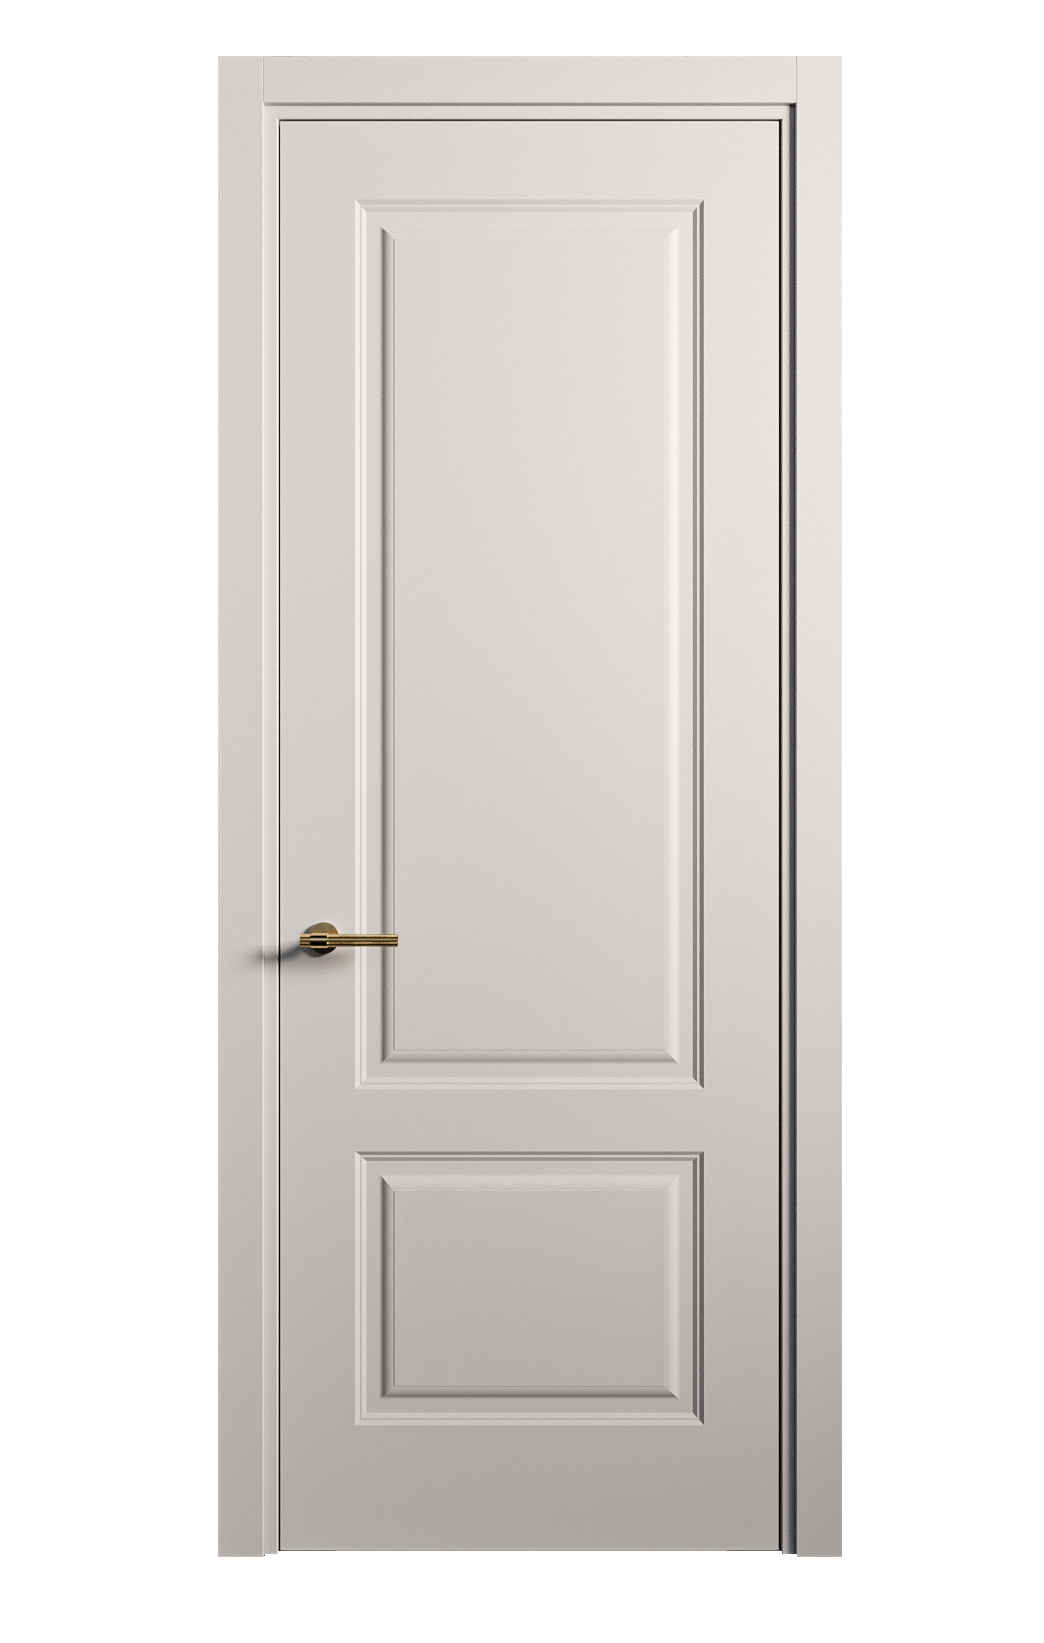 Межкомнатная дверь Вита-1 глухая эмаль ral 7047 26272